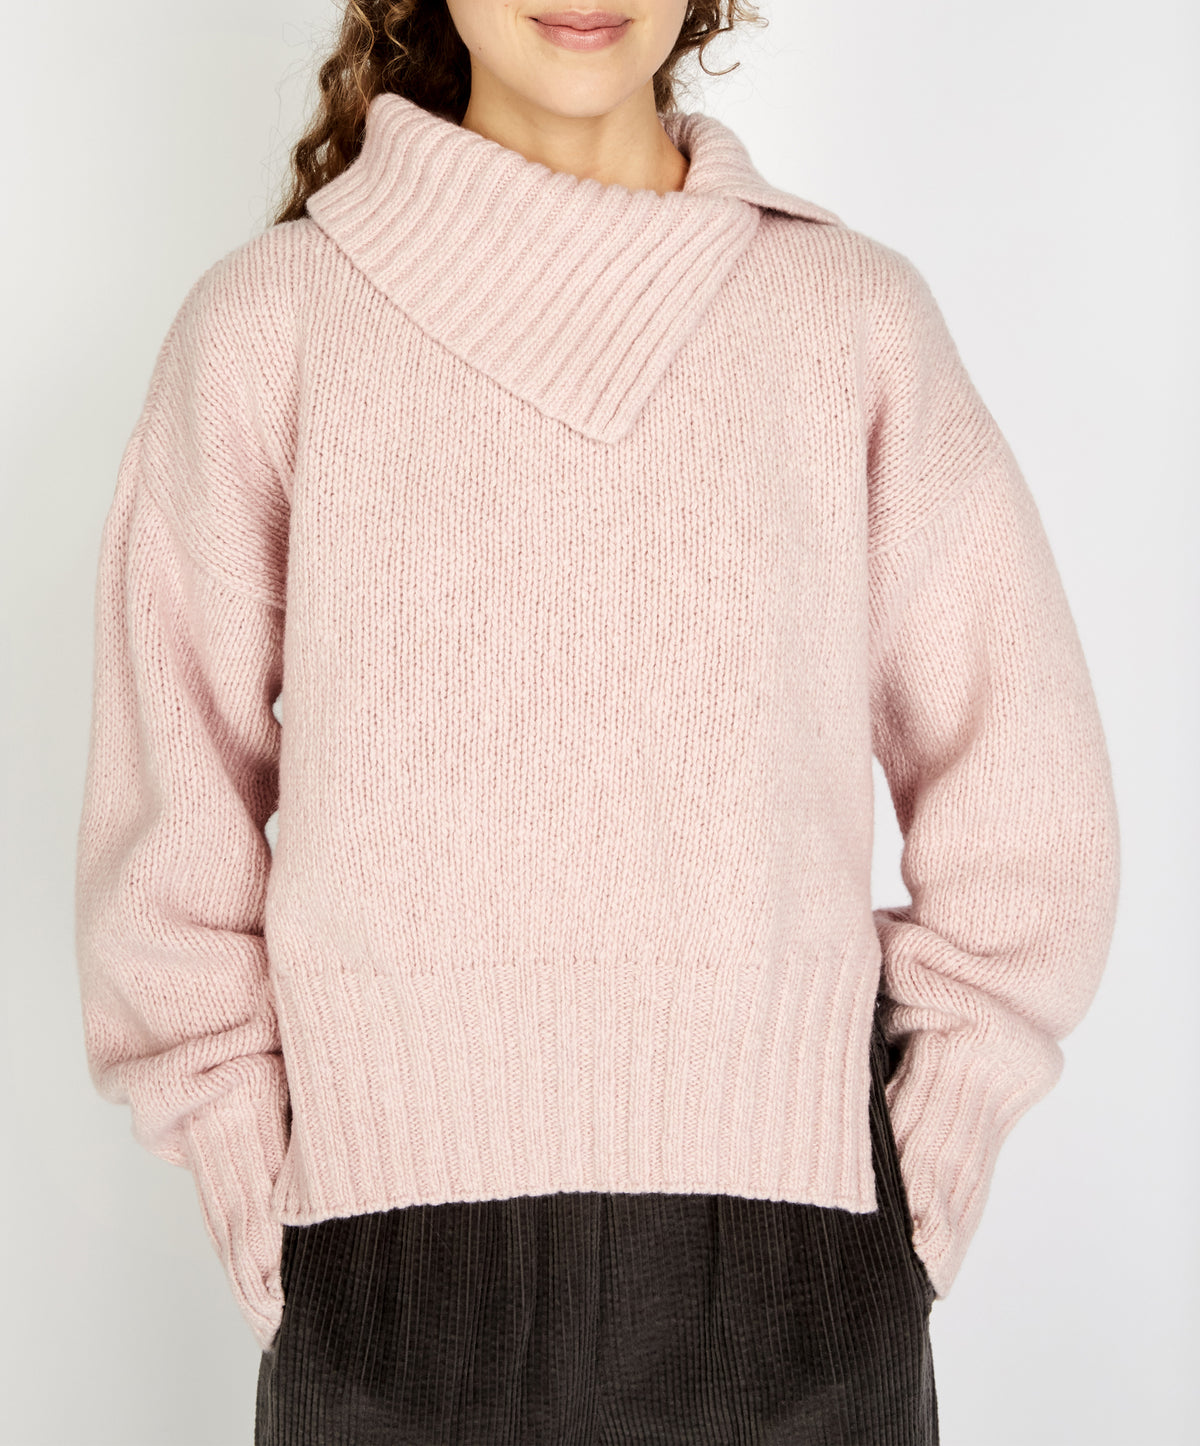 IrelandsEye Knitwear Wilde Slouchy Funnel Neck Sweater Pink Mist